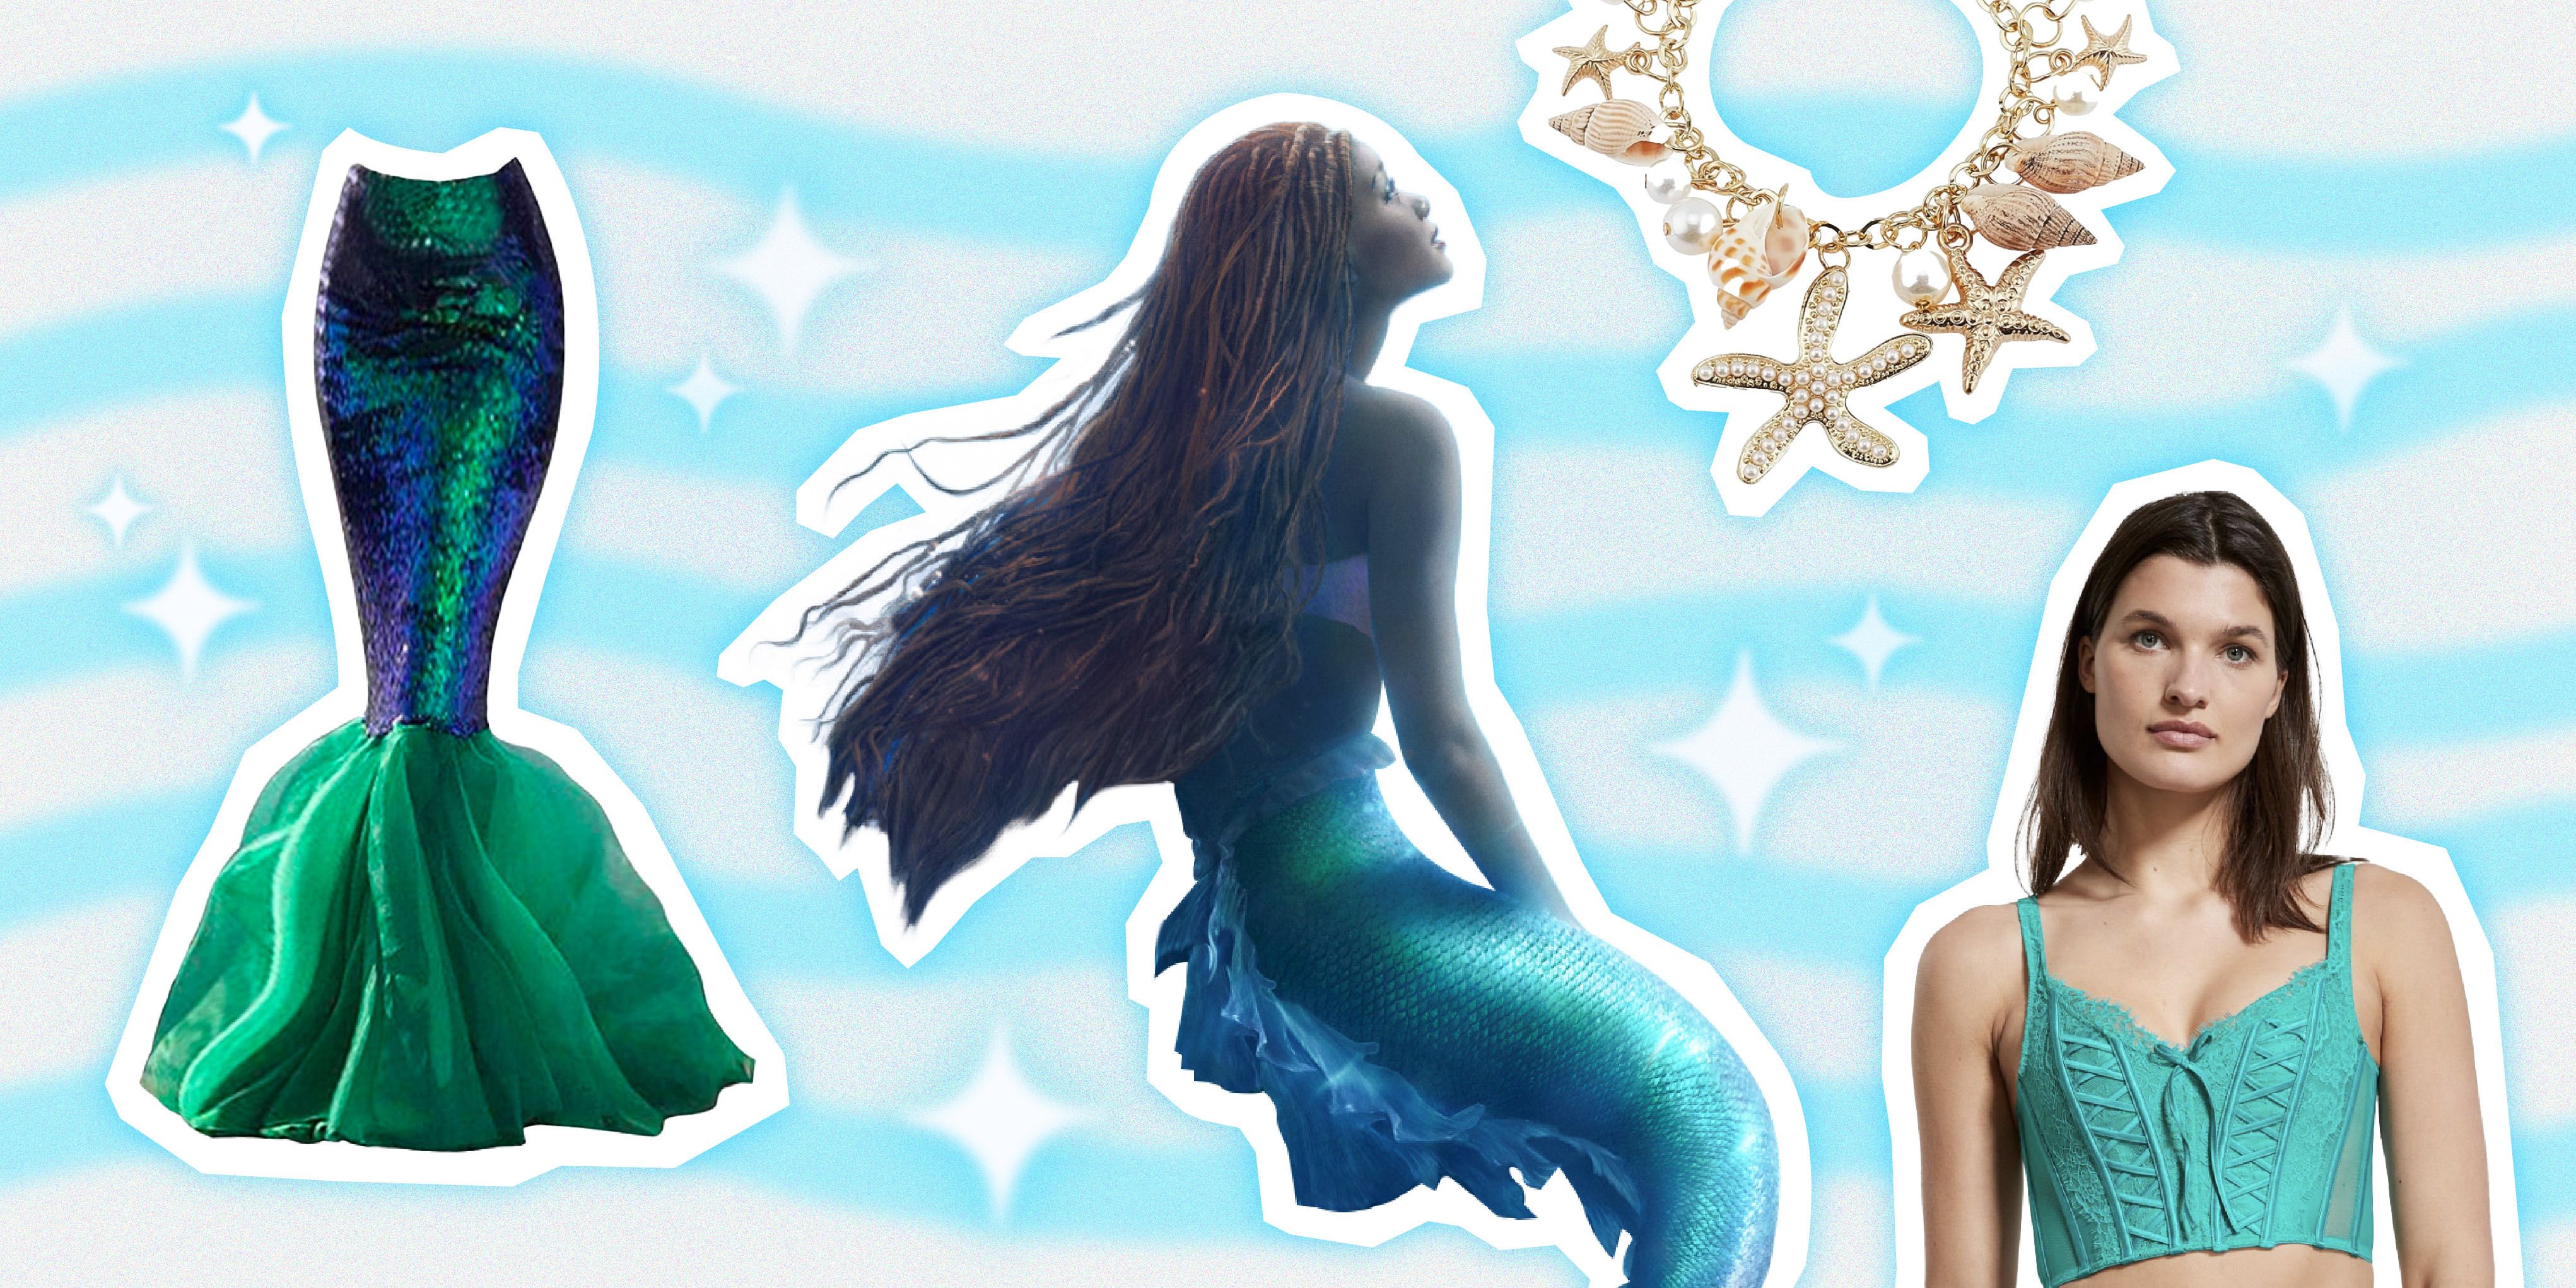 Shell Mermaid Bra  Mermaid bra, Mermaid costume, Mermaid outfit